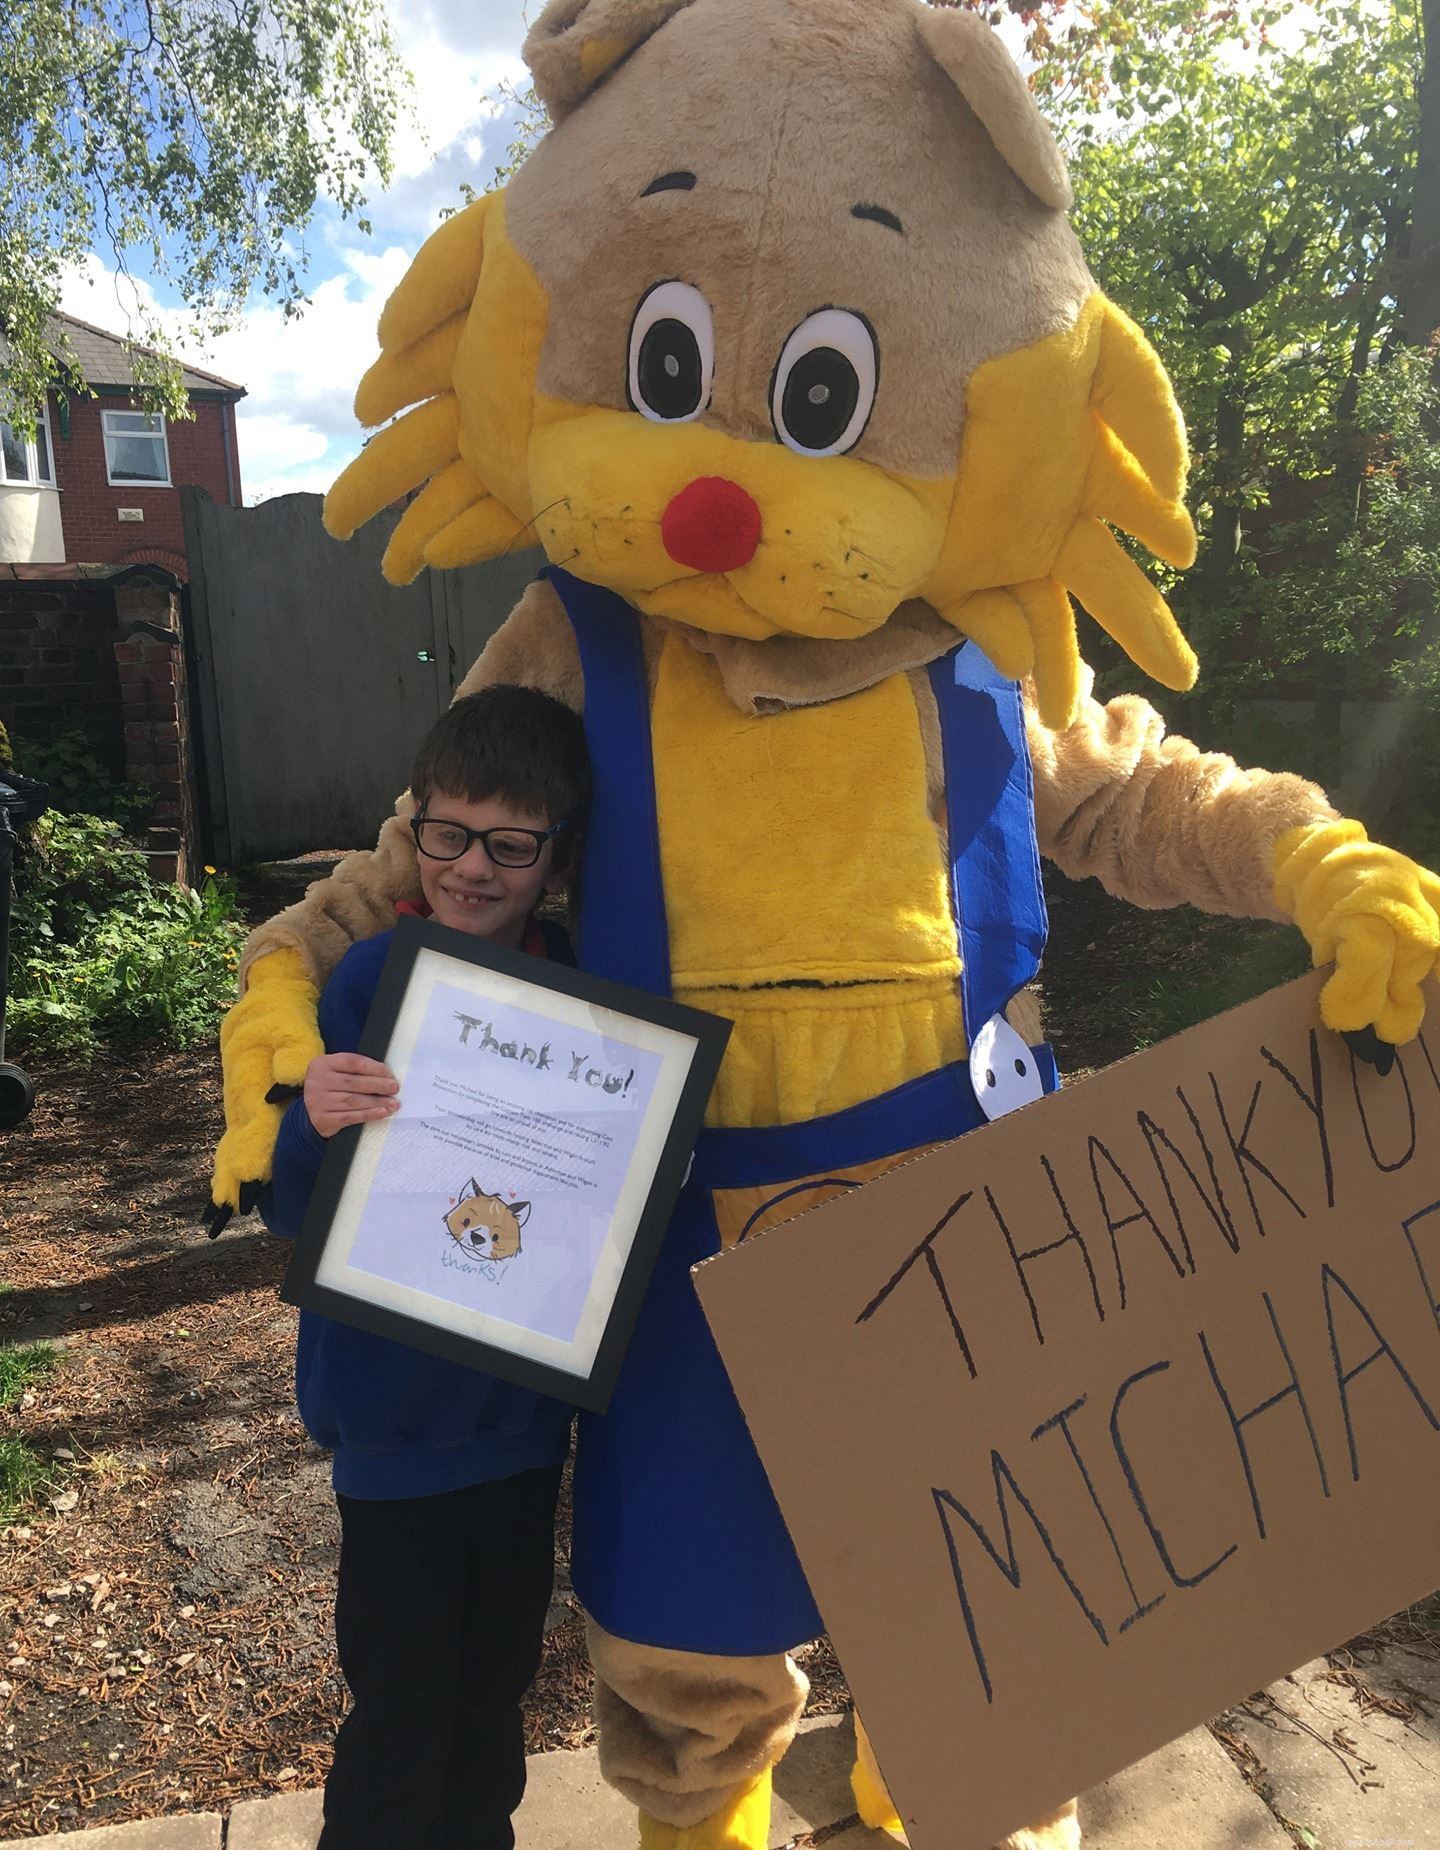 L undicenne Michael Hart di Wigan ha intrattenuto sia i gatti che i follower di Facebook per raccogliere £ 300 per un ente di beneficenza che gli sta a cuore